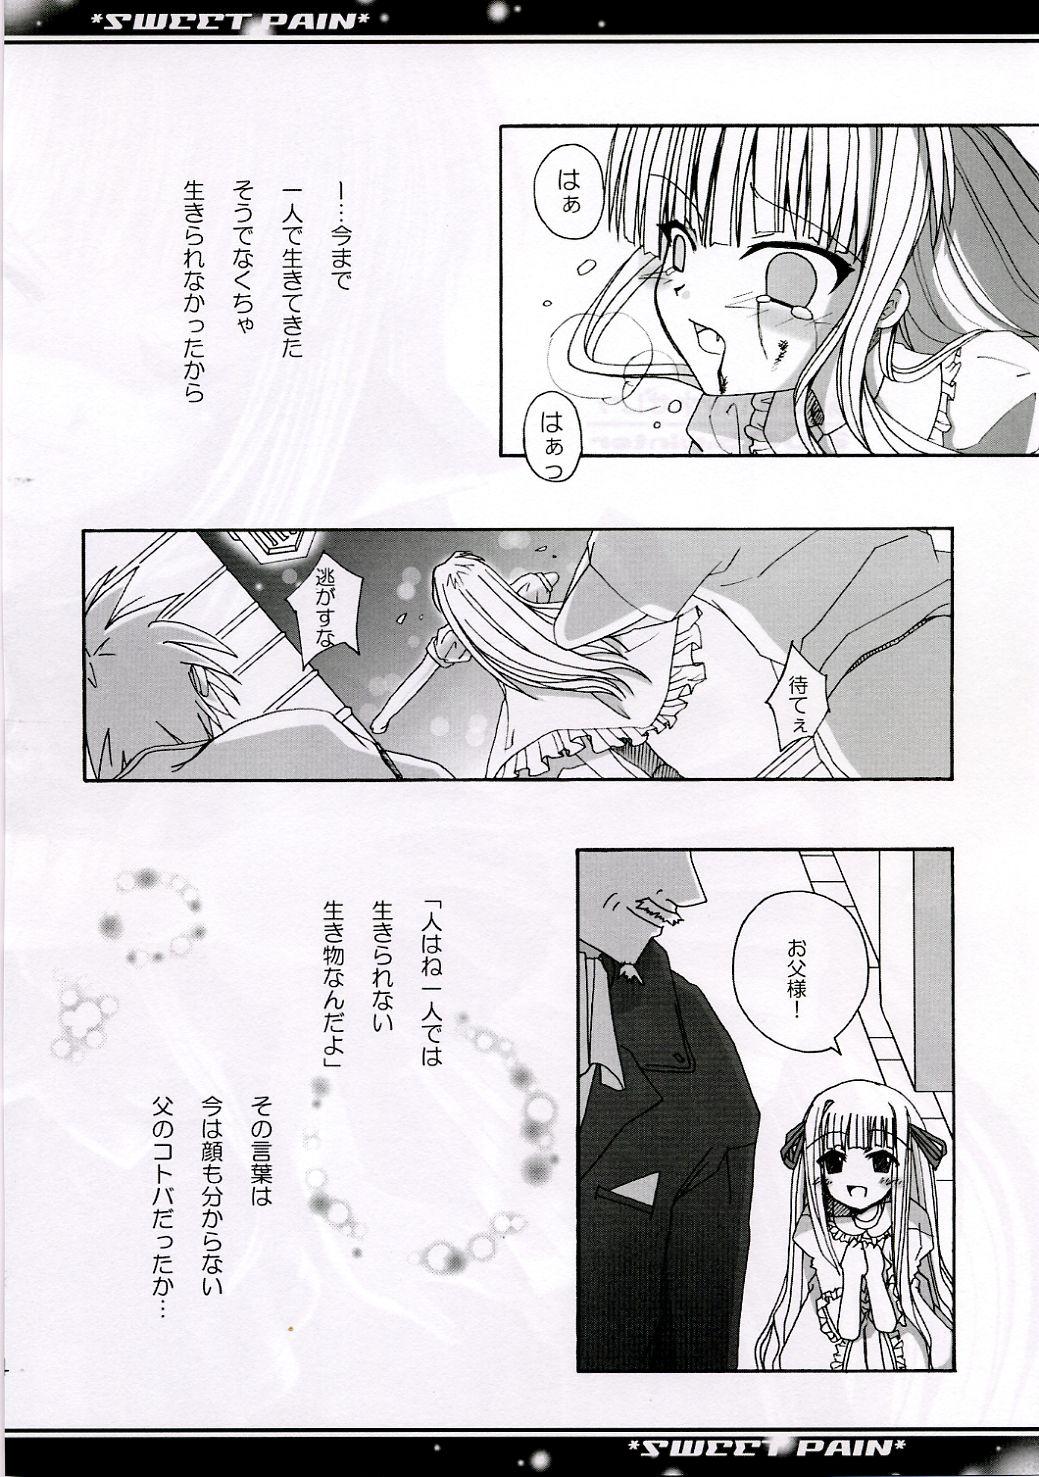 Stepfather SWEET PAIN - Mahou sensei negima Sexy Whores - Page 3